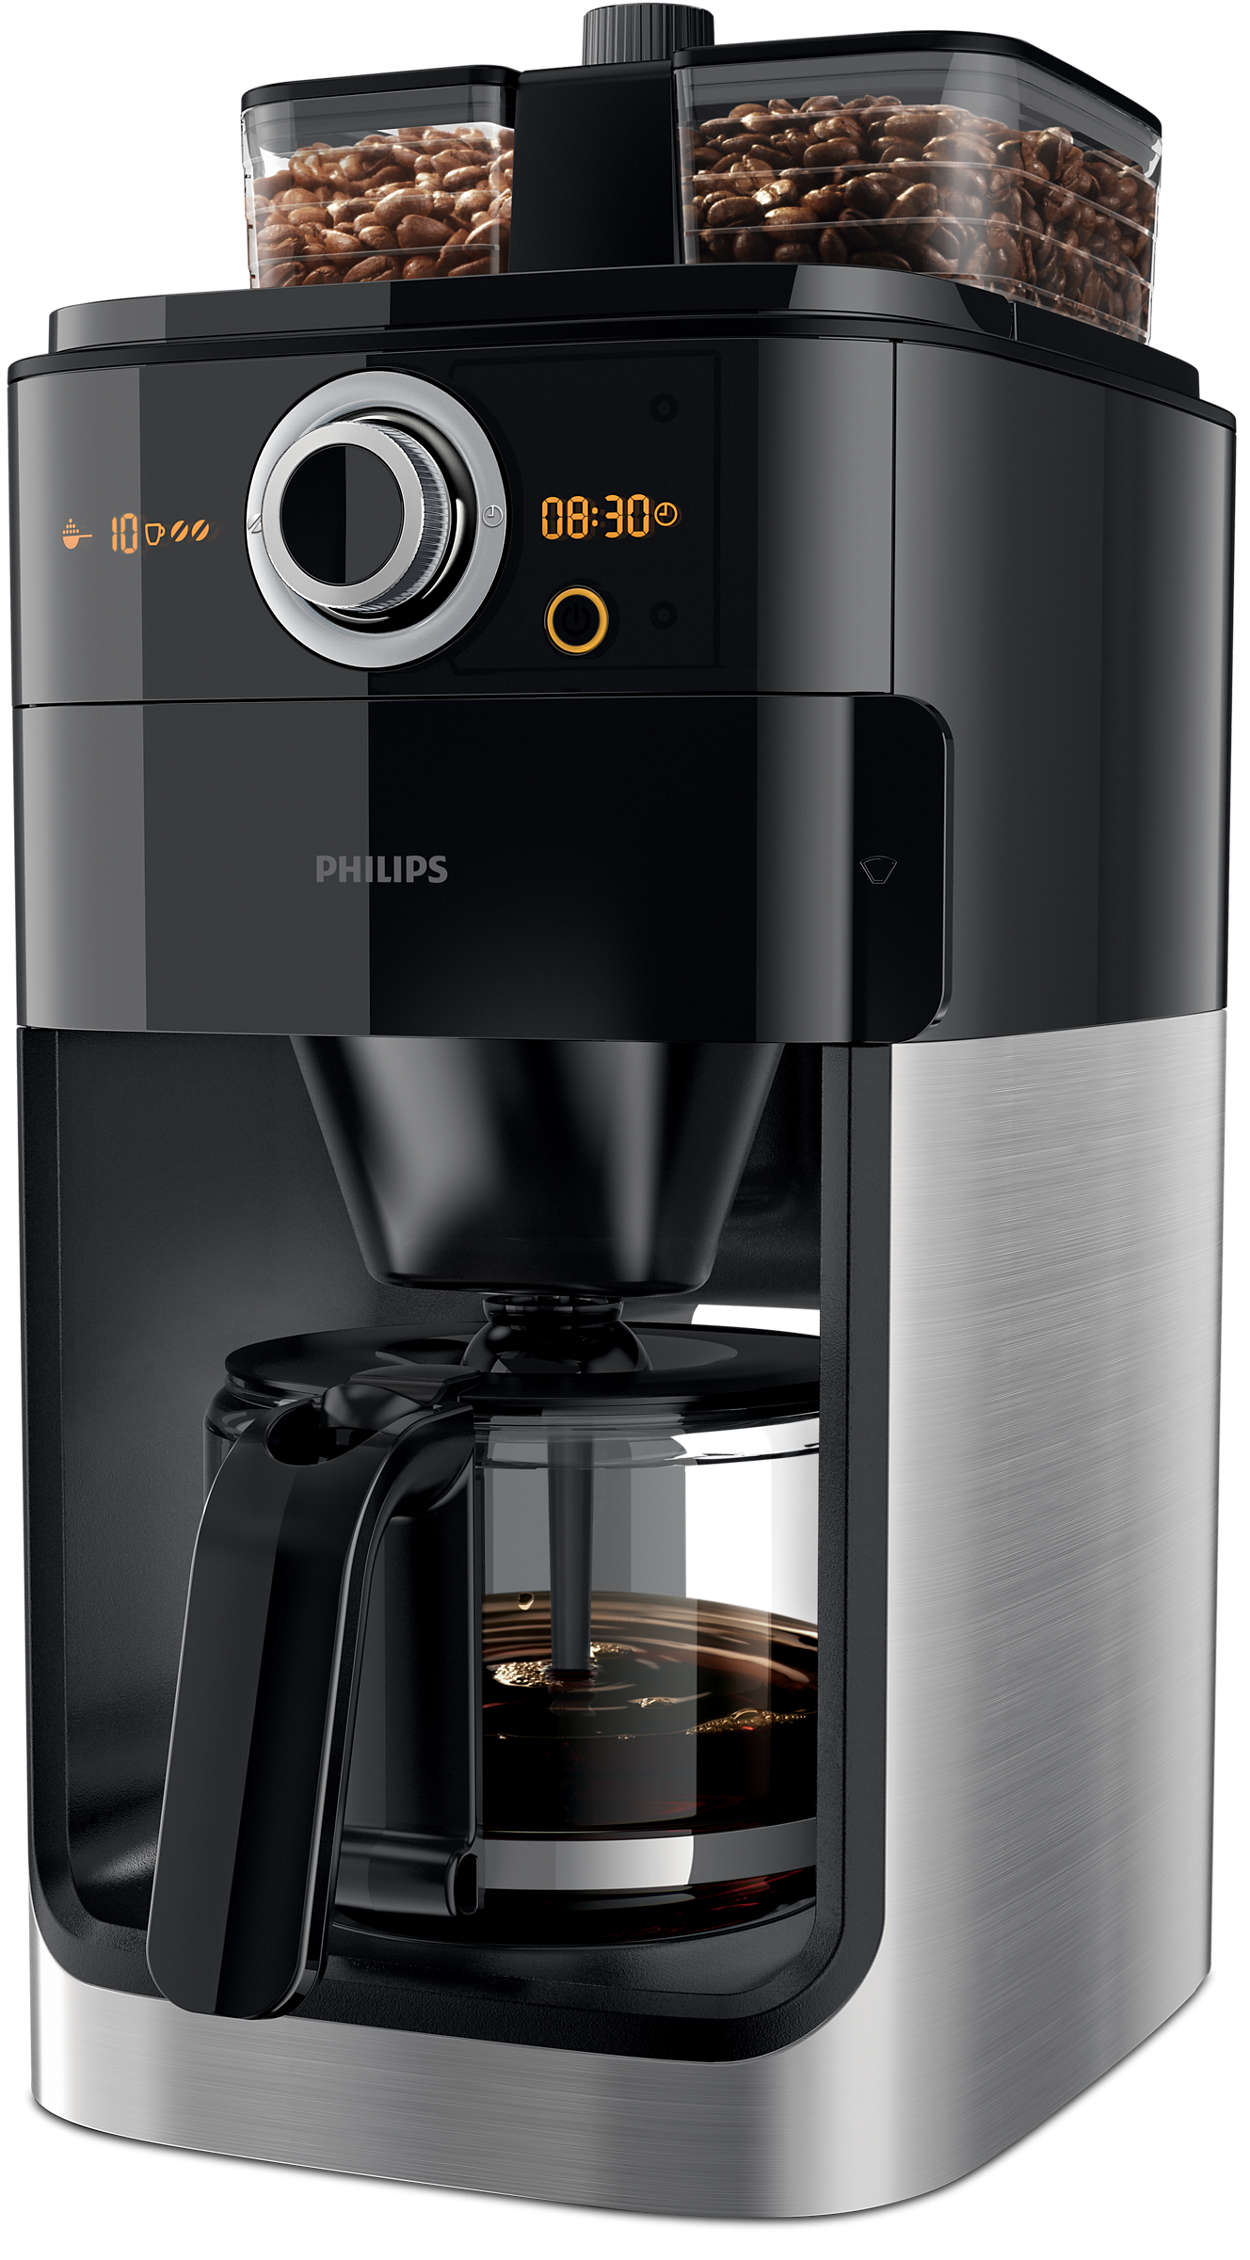 Køb Philips - & Kaffemaskine - Fri fragt